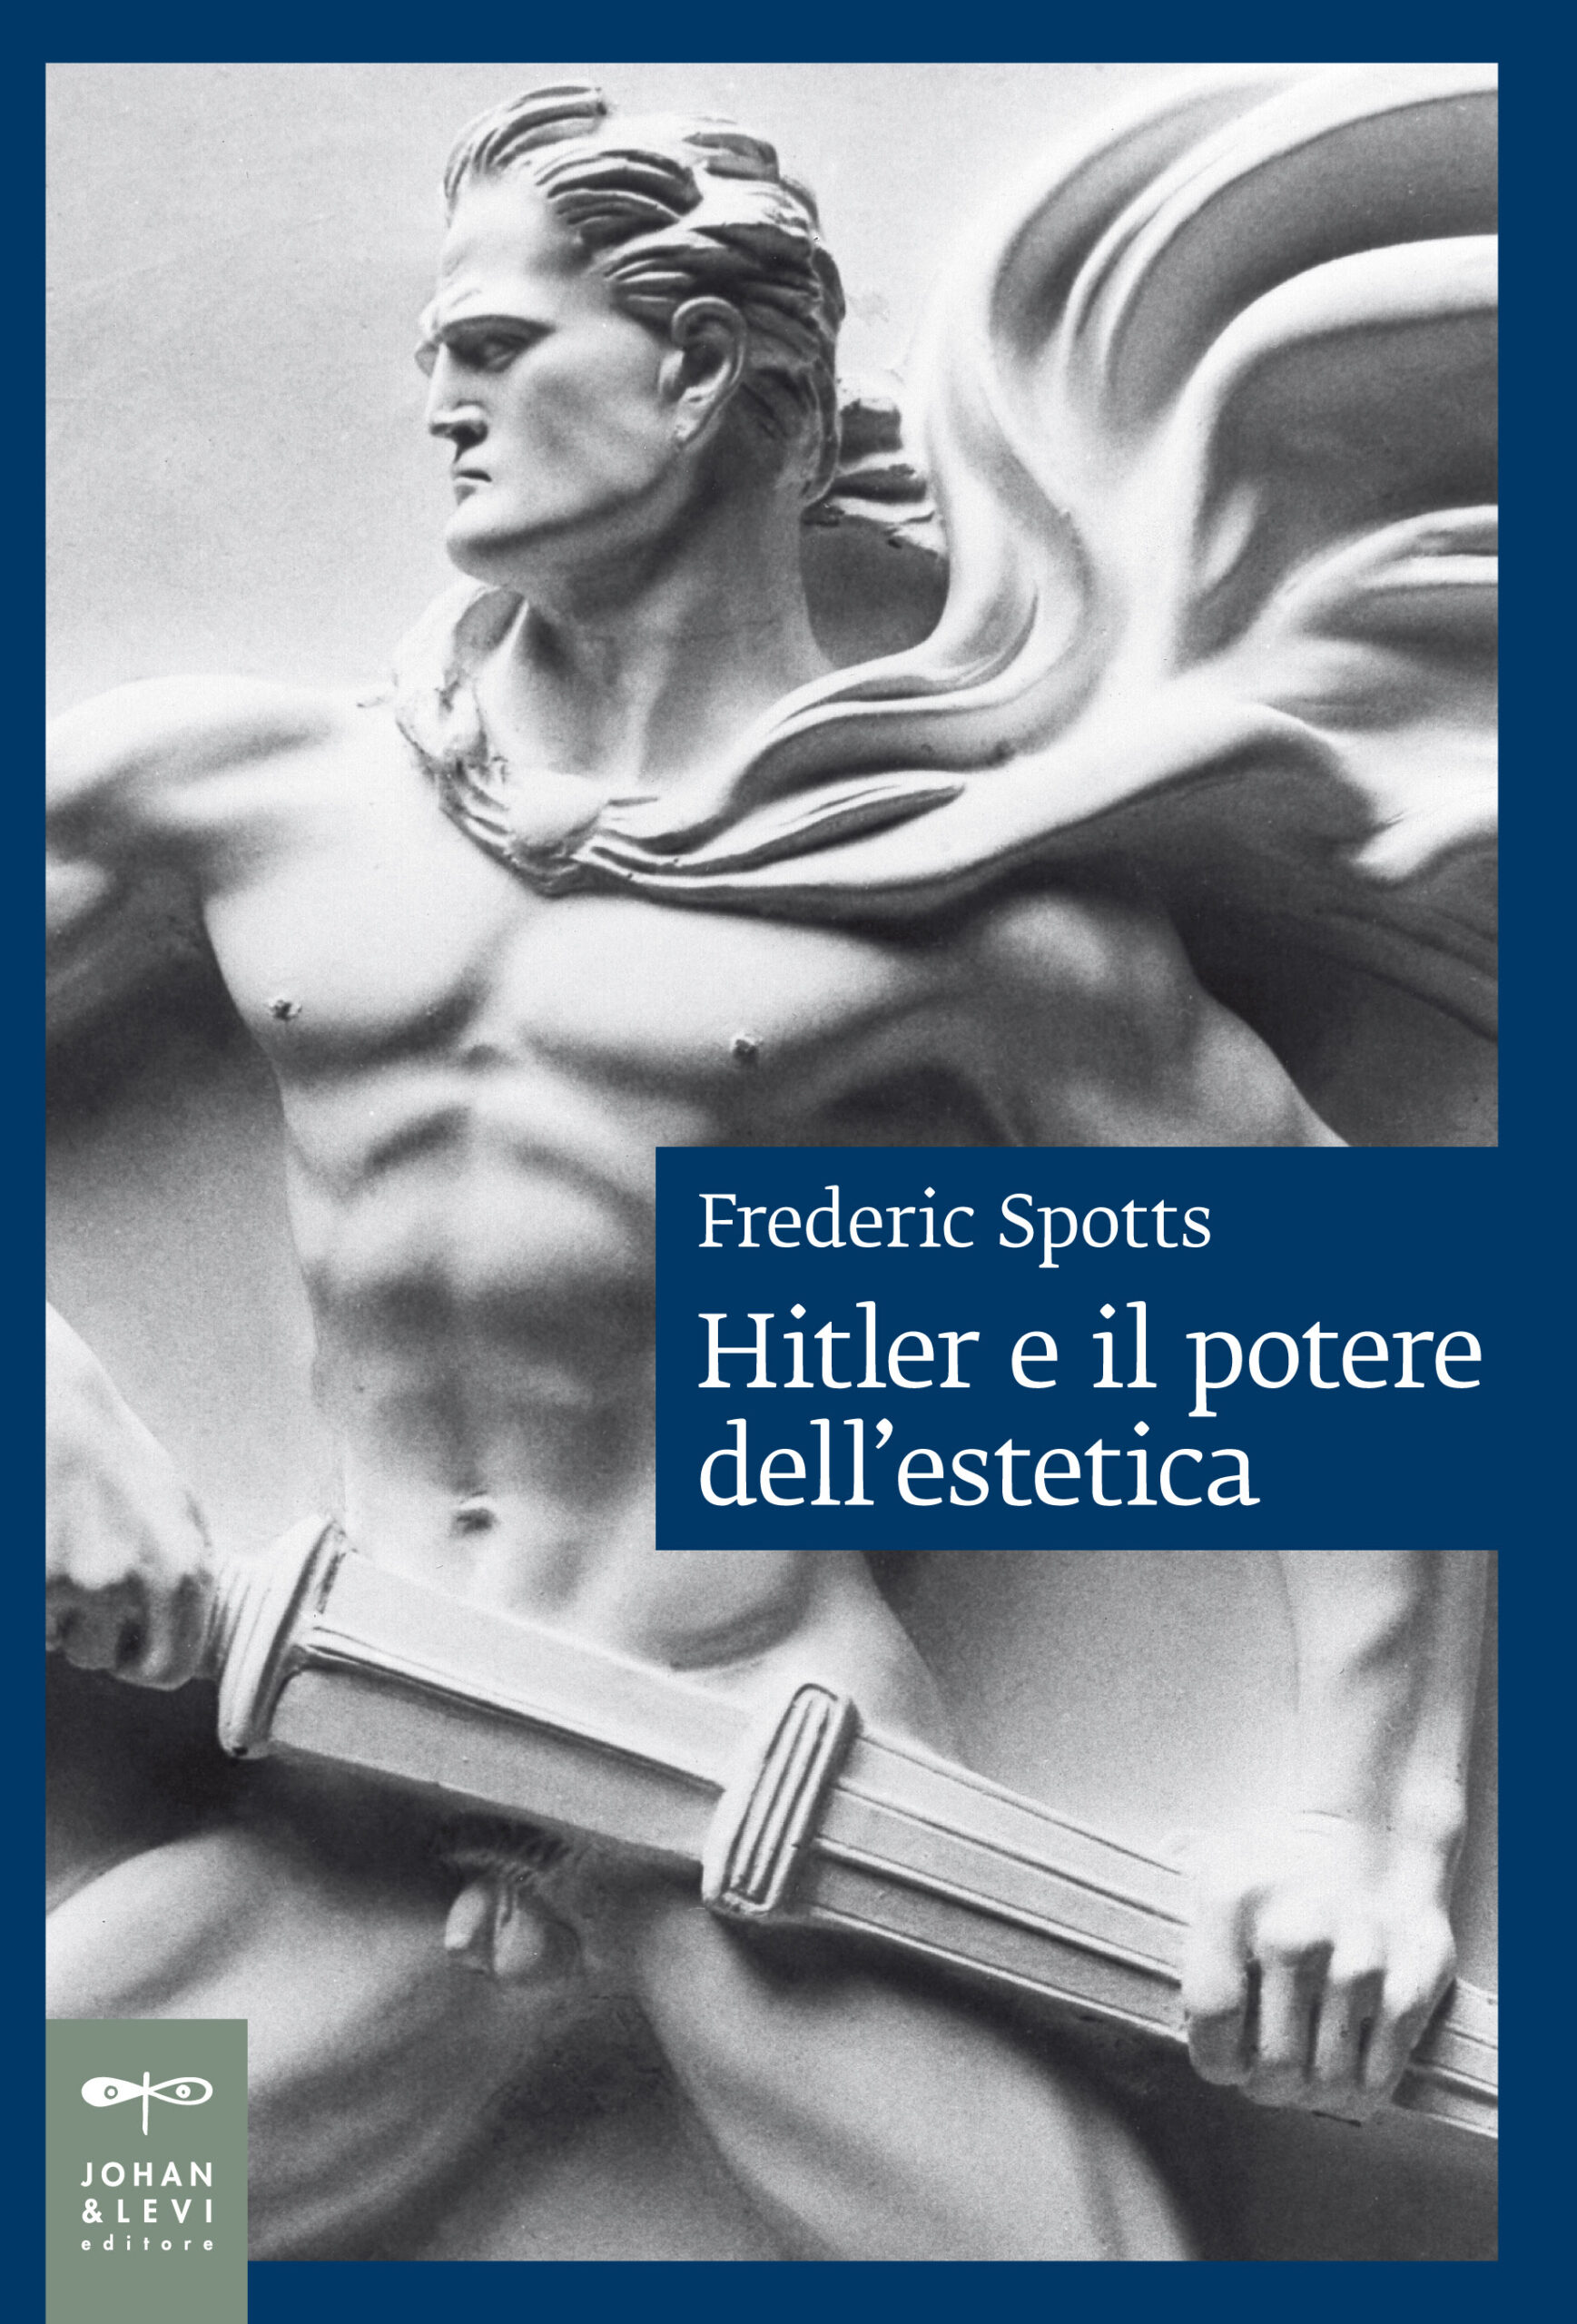 Federico Spotts, Hitler e il potere dell'estetica, Johan & Levi, 2023